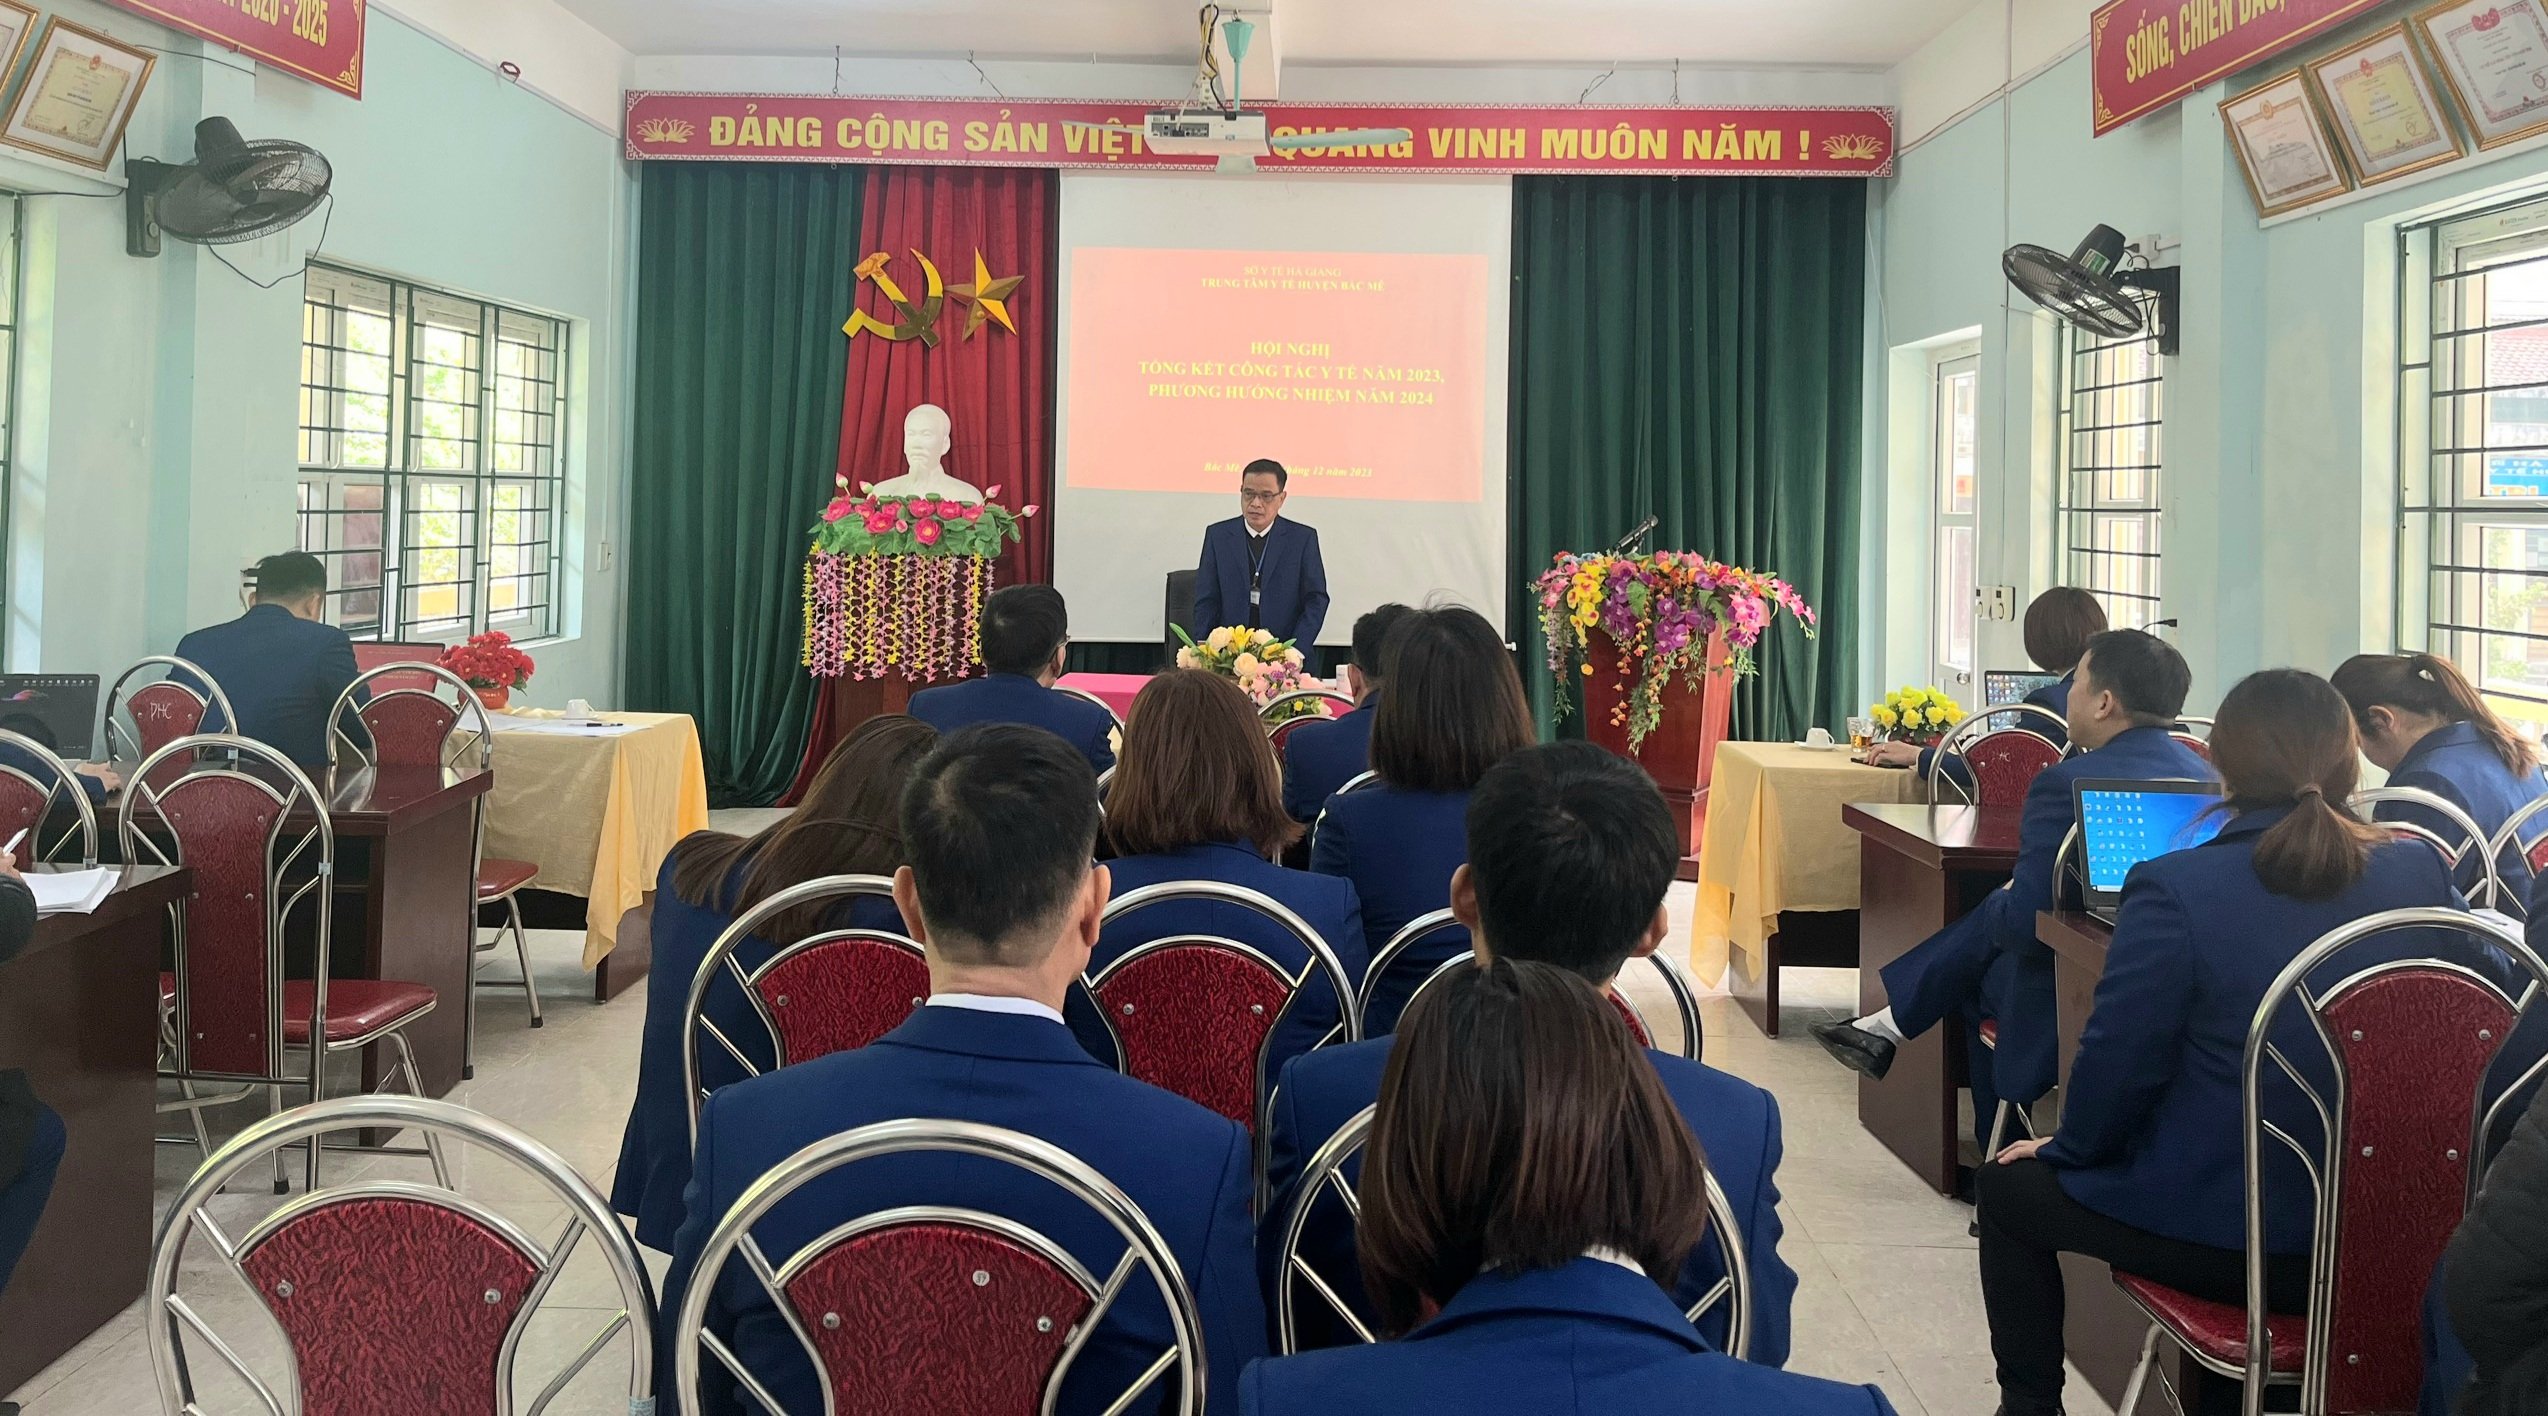 Đồng chí Nguyễn Duy Hoa, Giám đốc Trung tâm Y tế phát biểu khai mạc tại Hội nghị